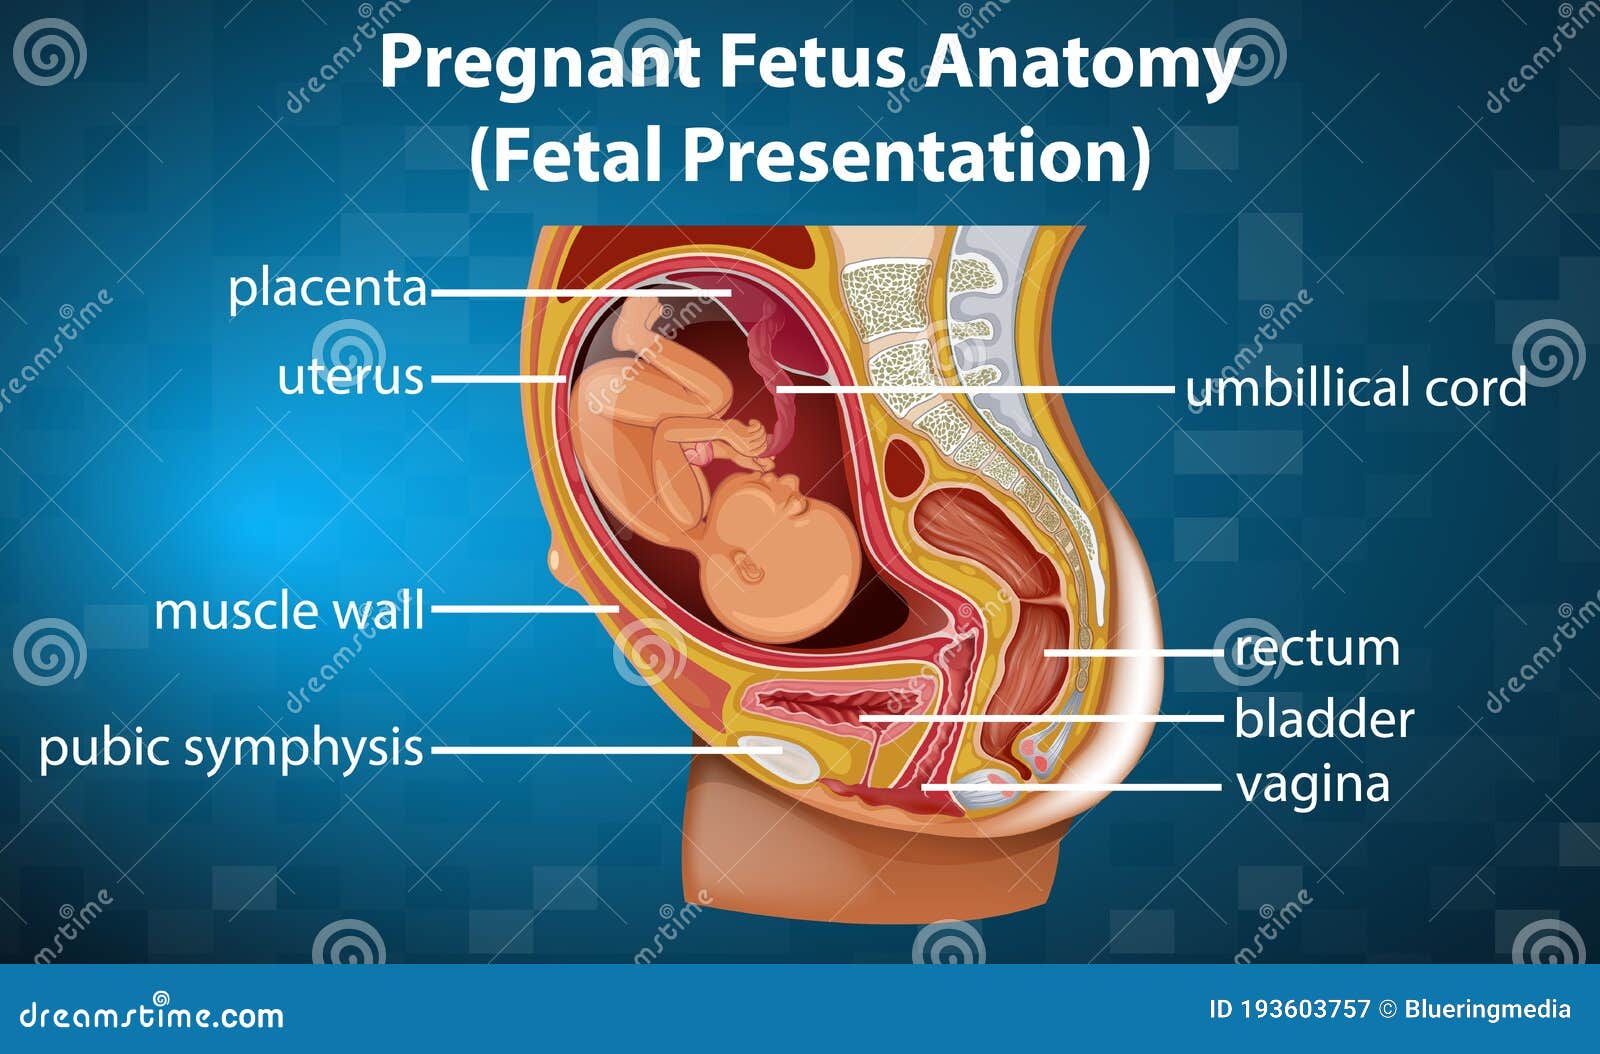 Pregnant Anatomy And The Fetus Cartoon Vector | CartoonDealer.com #10105213